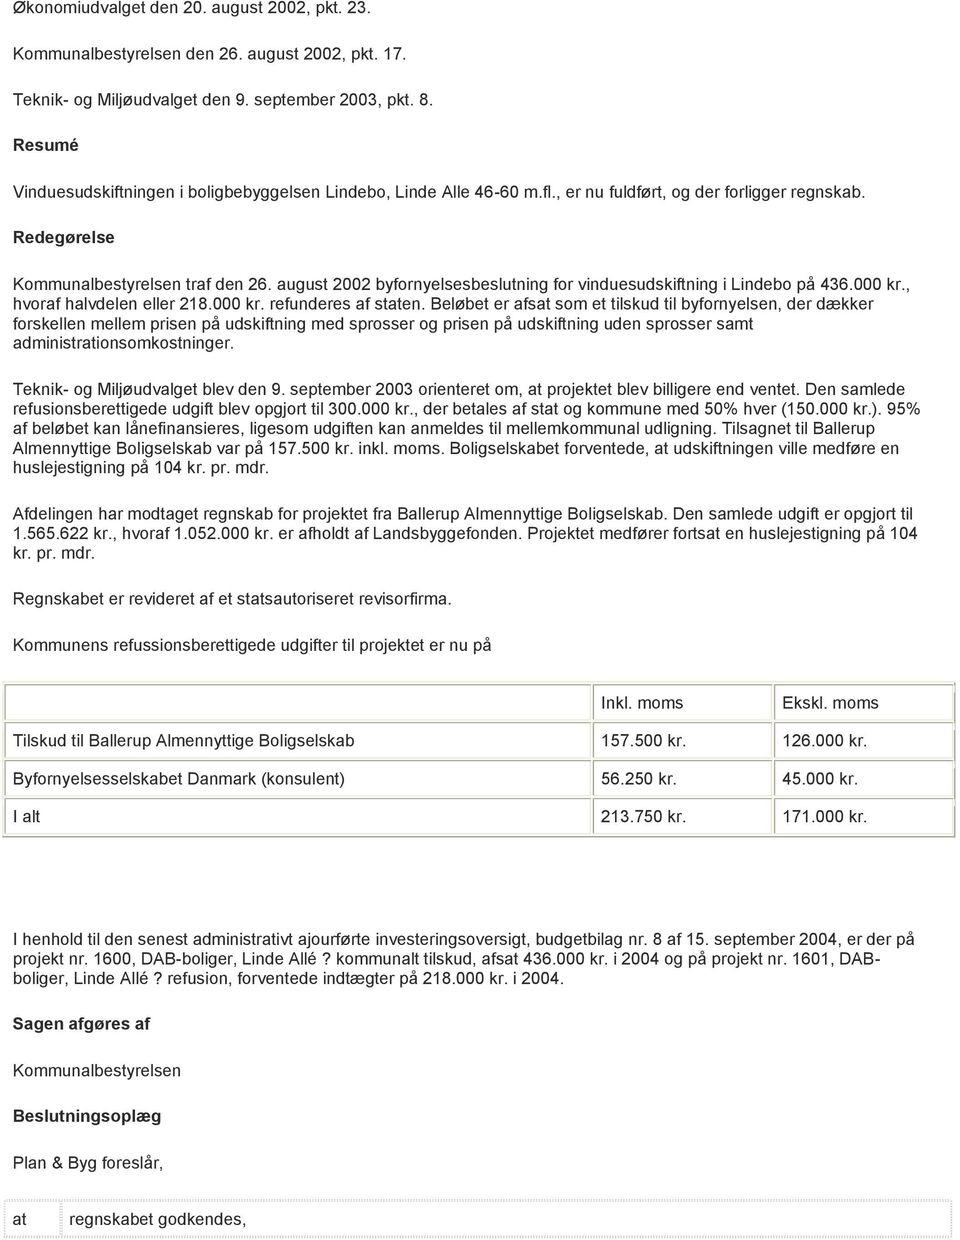 august 2002 byfornyelsesbeslutning for vinduesudskiftning i Lindebo på 436.000 kr., hvoraf halvdelen eller 218.000 kr. refunderes af sten.